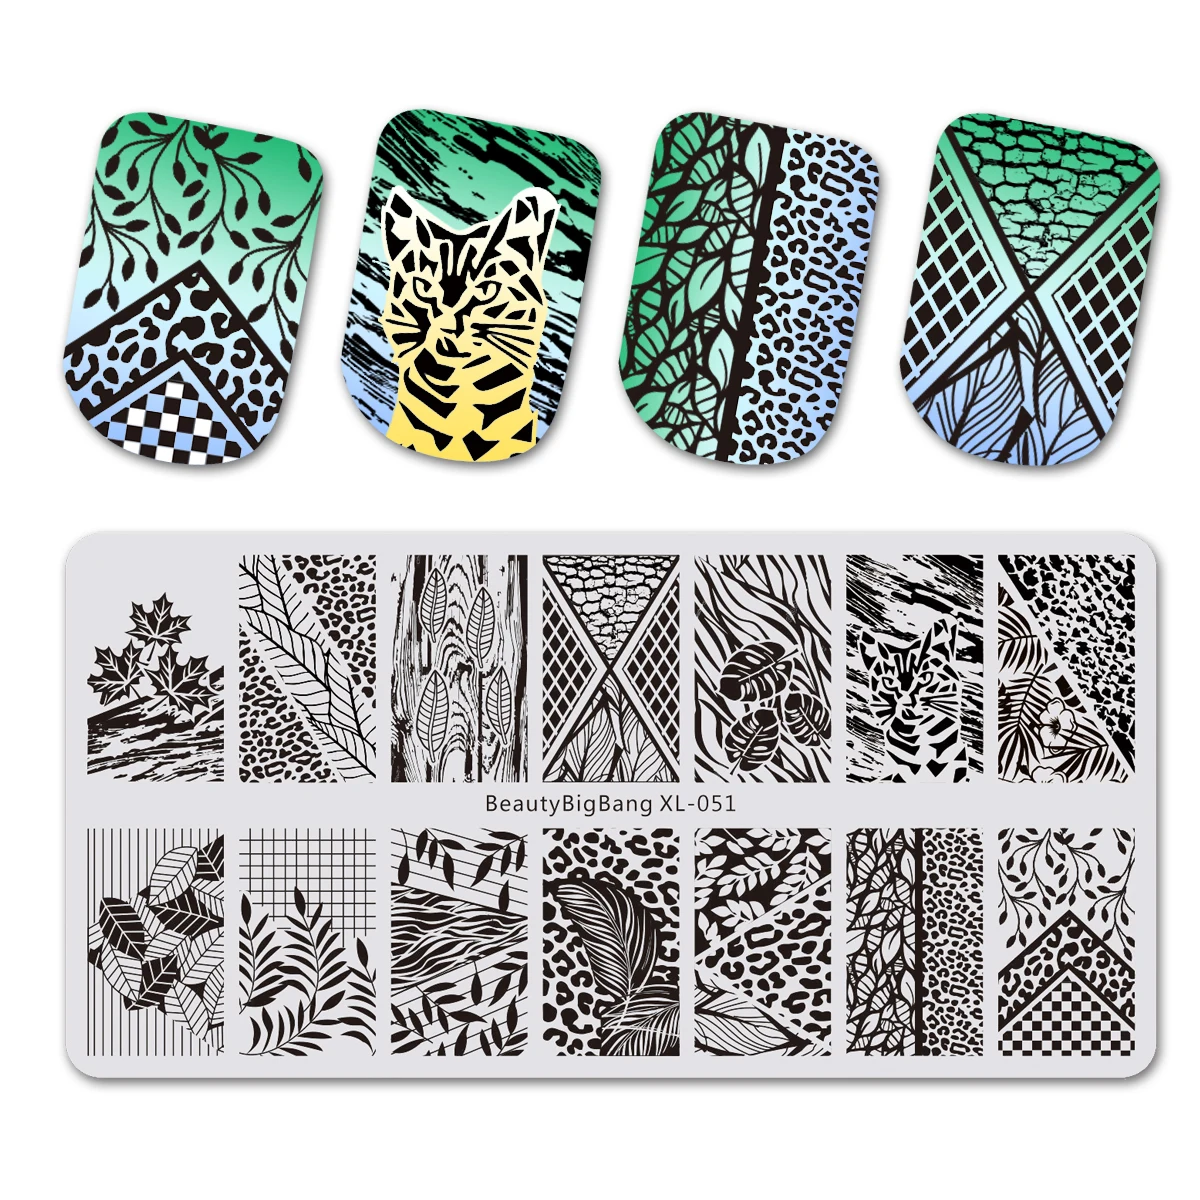 BeautyBigBang природа растения животные строительный дизайн изображения ногтей шаблон штамповочной пластины дизайн ногтей штамп ногтей плесень - Цвет: 684467770548